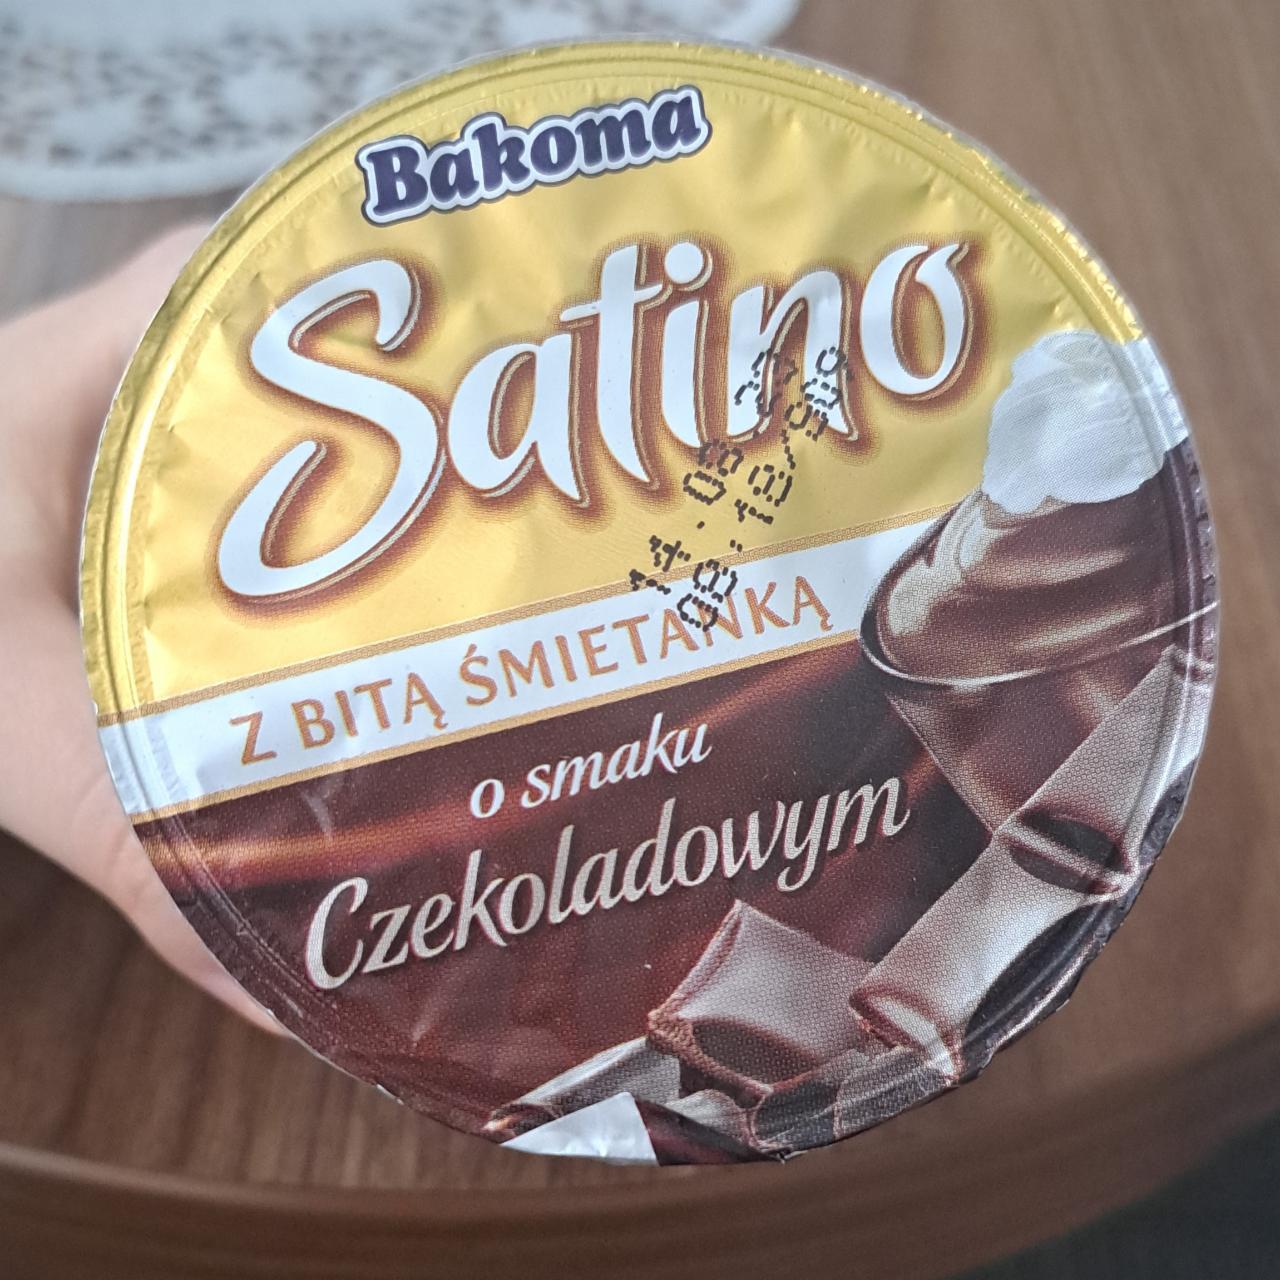 Фото - Шоколадный десерт со взбитыми сливками Deser o smaku czekoladowym z bitą śmietanką Santino Bakoma